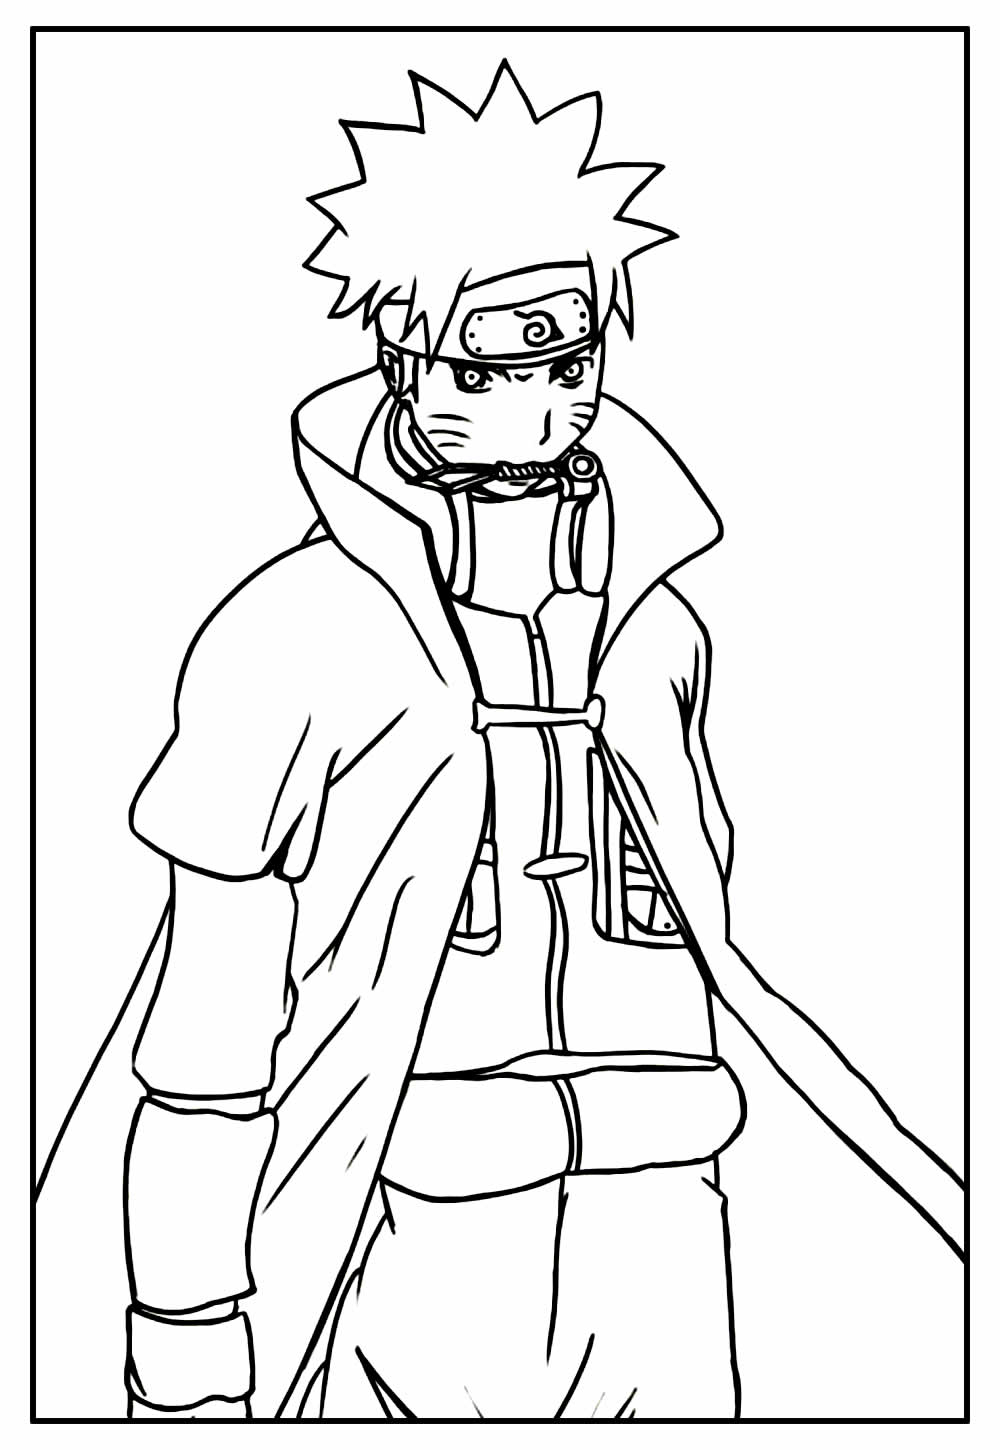 Desenho de Naruto para imprimir e colorir